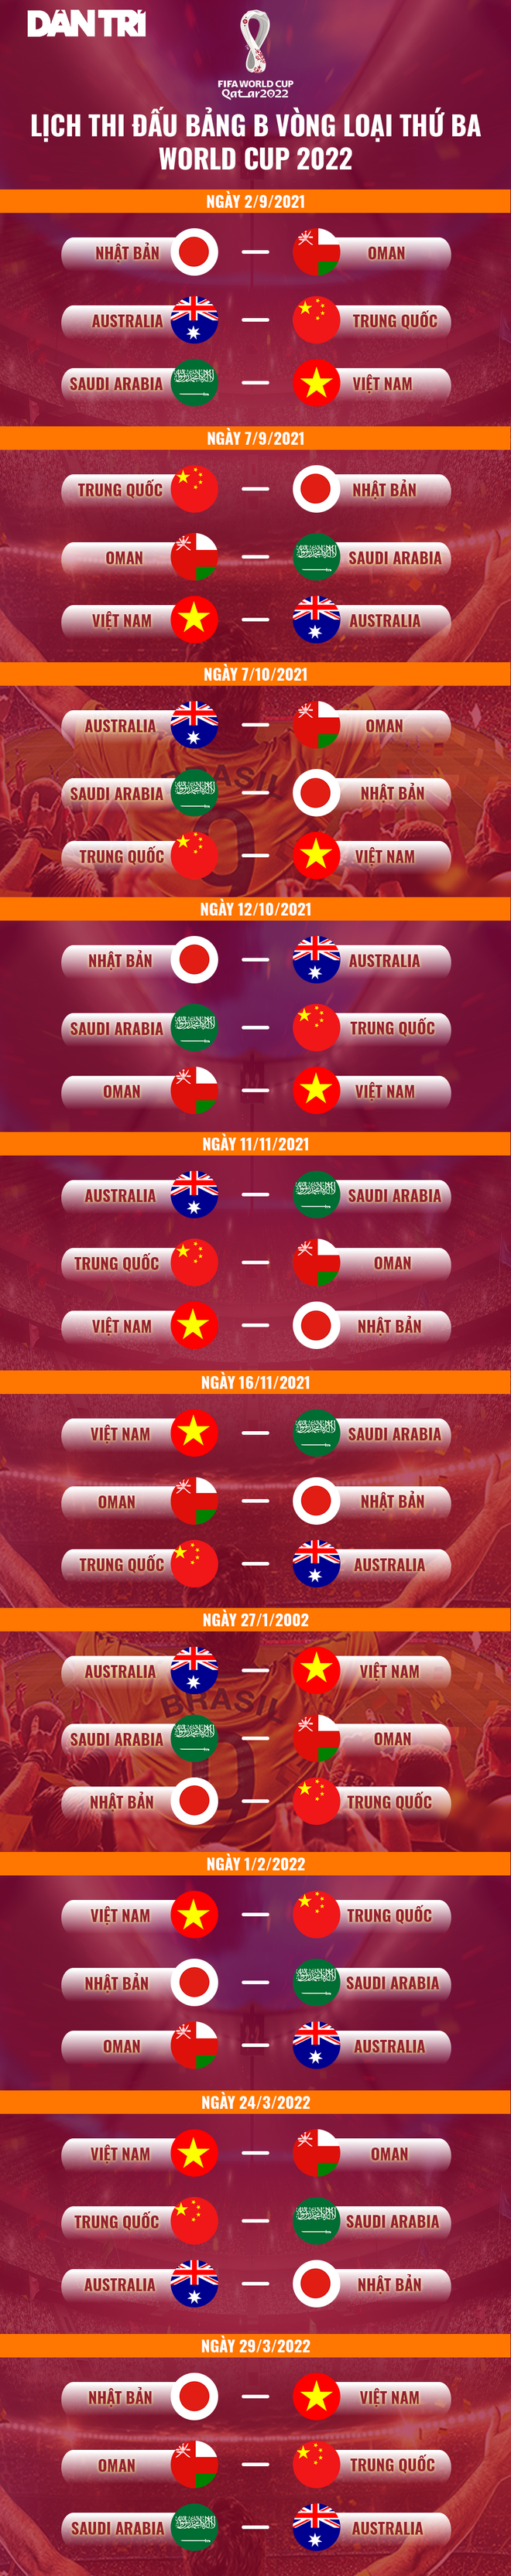 Đội tuyển Việt Nam chốt giờ thi đấu với Saudi Arabia lúc 0h ngày 3/9 - 2